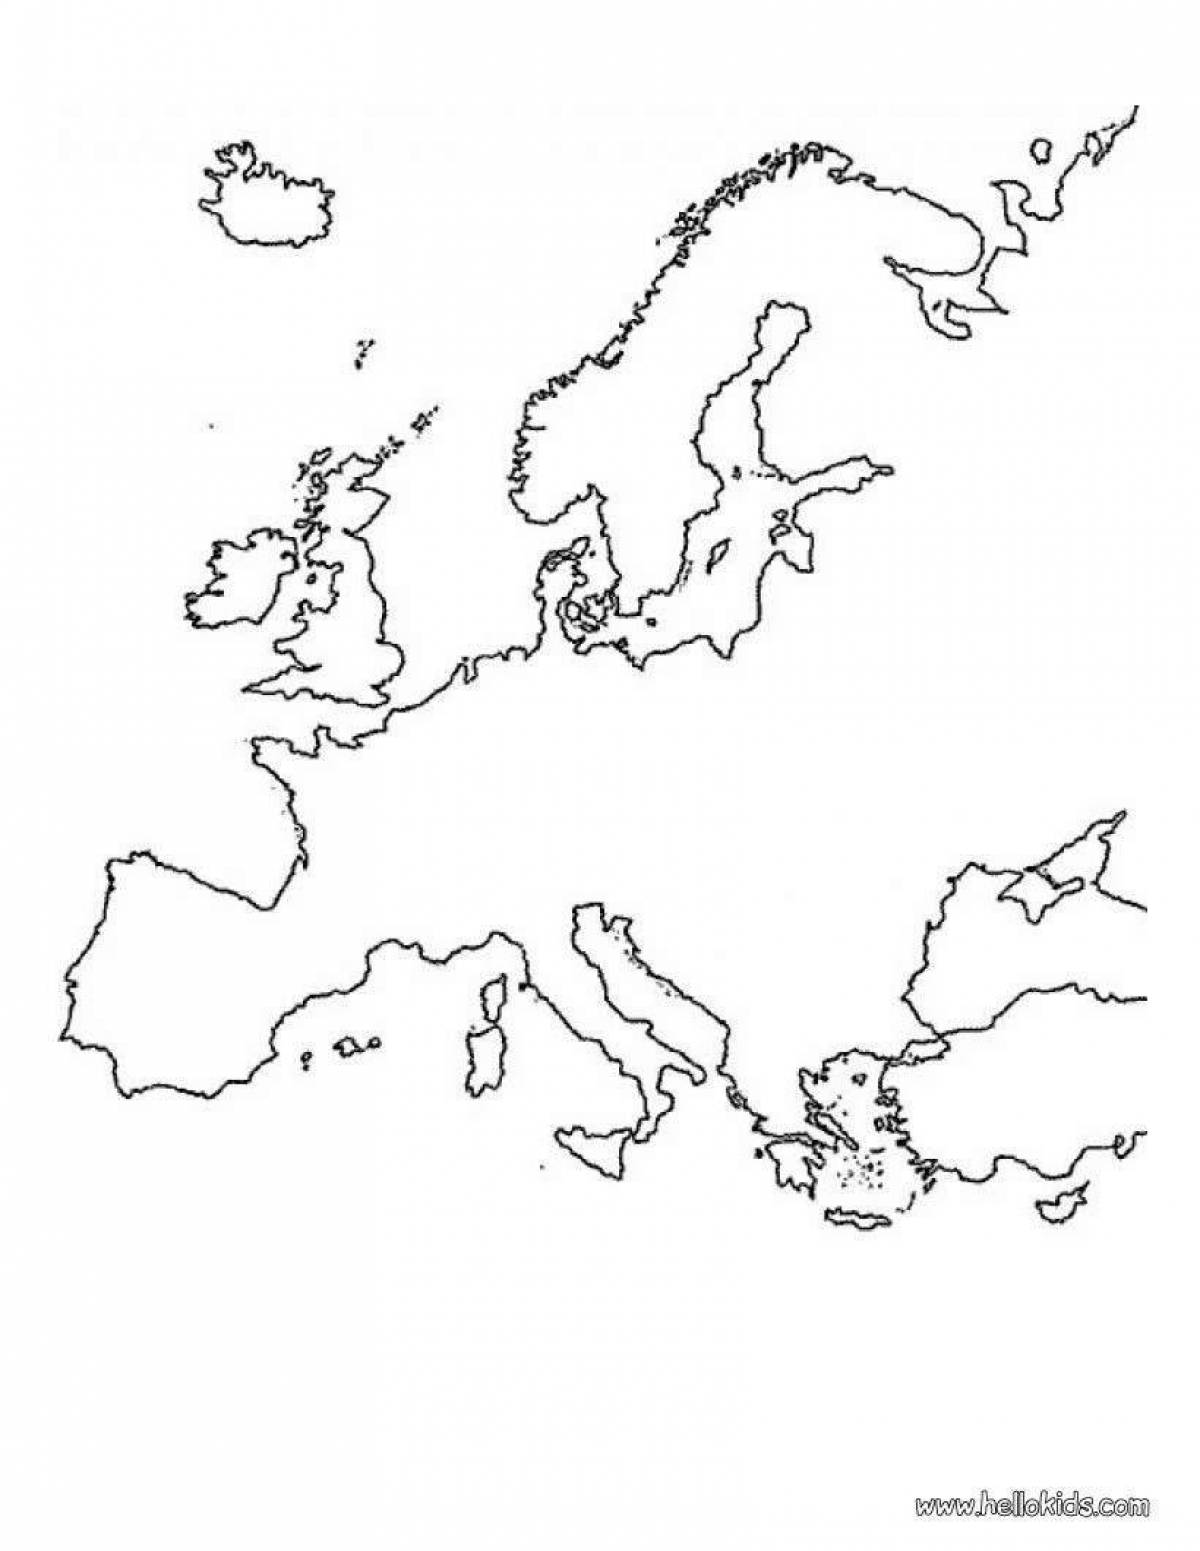 Подробная карта европы